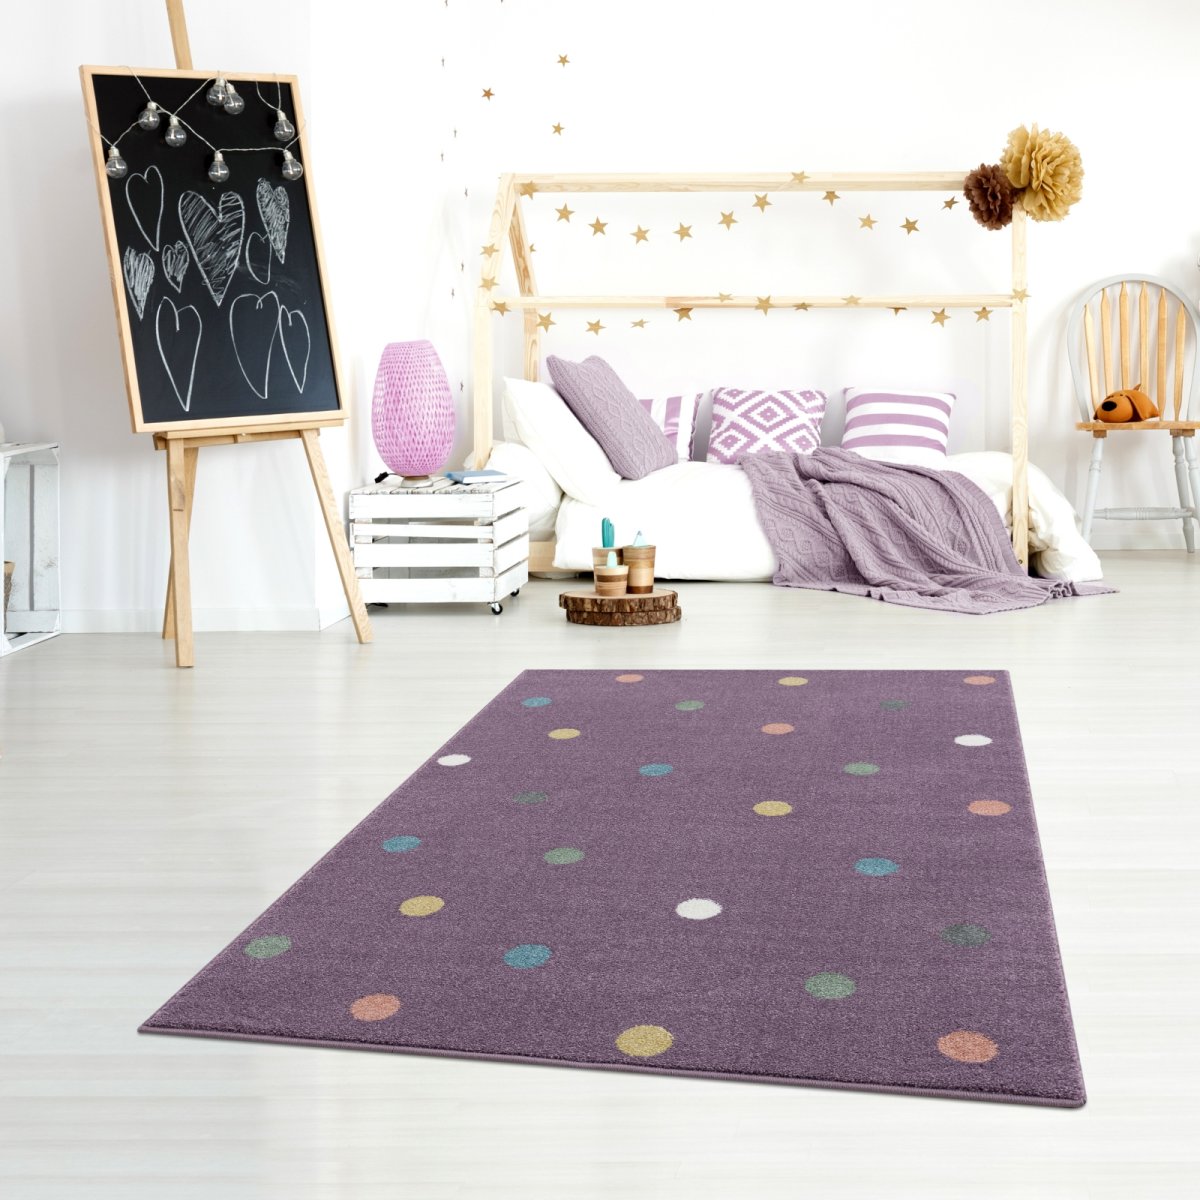 Dětský koberec Happyrugs - kolečka fialová